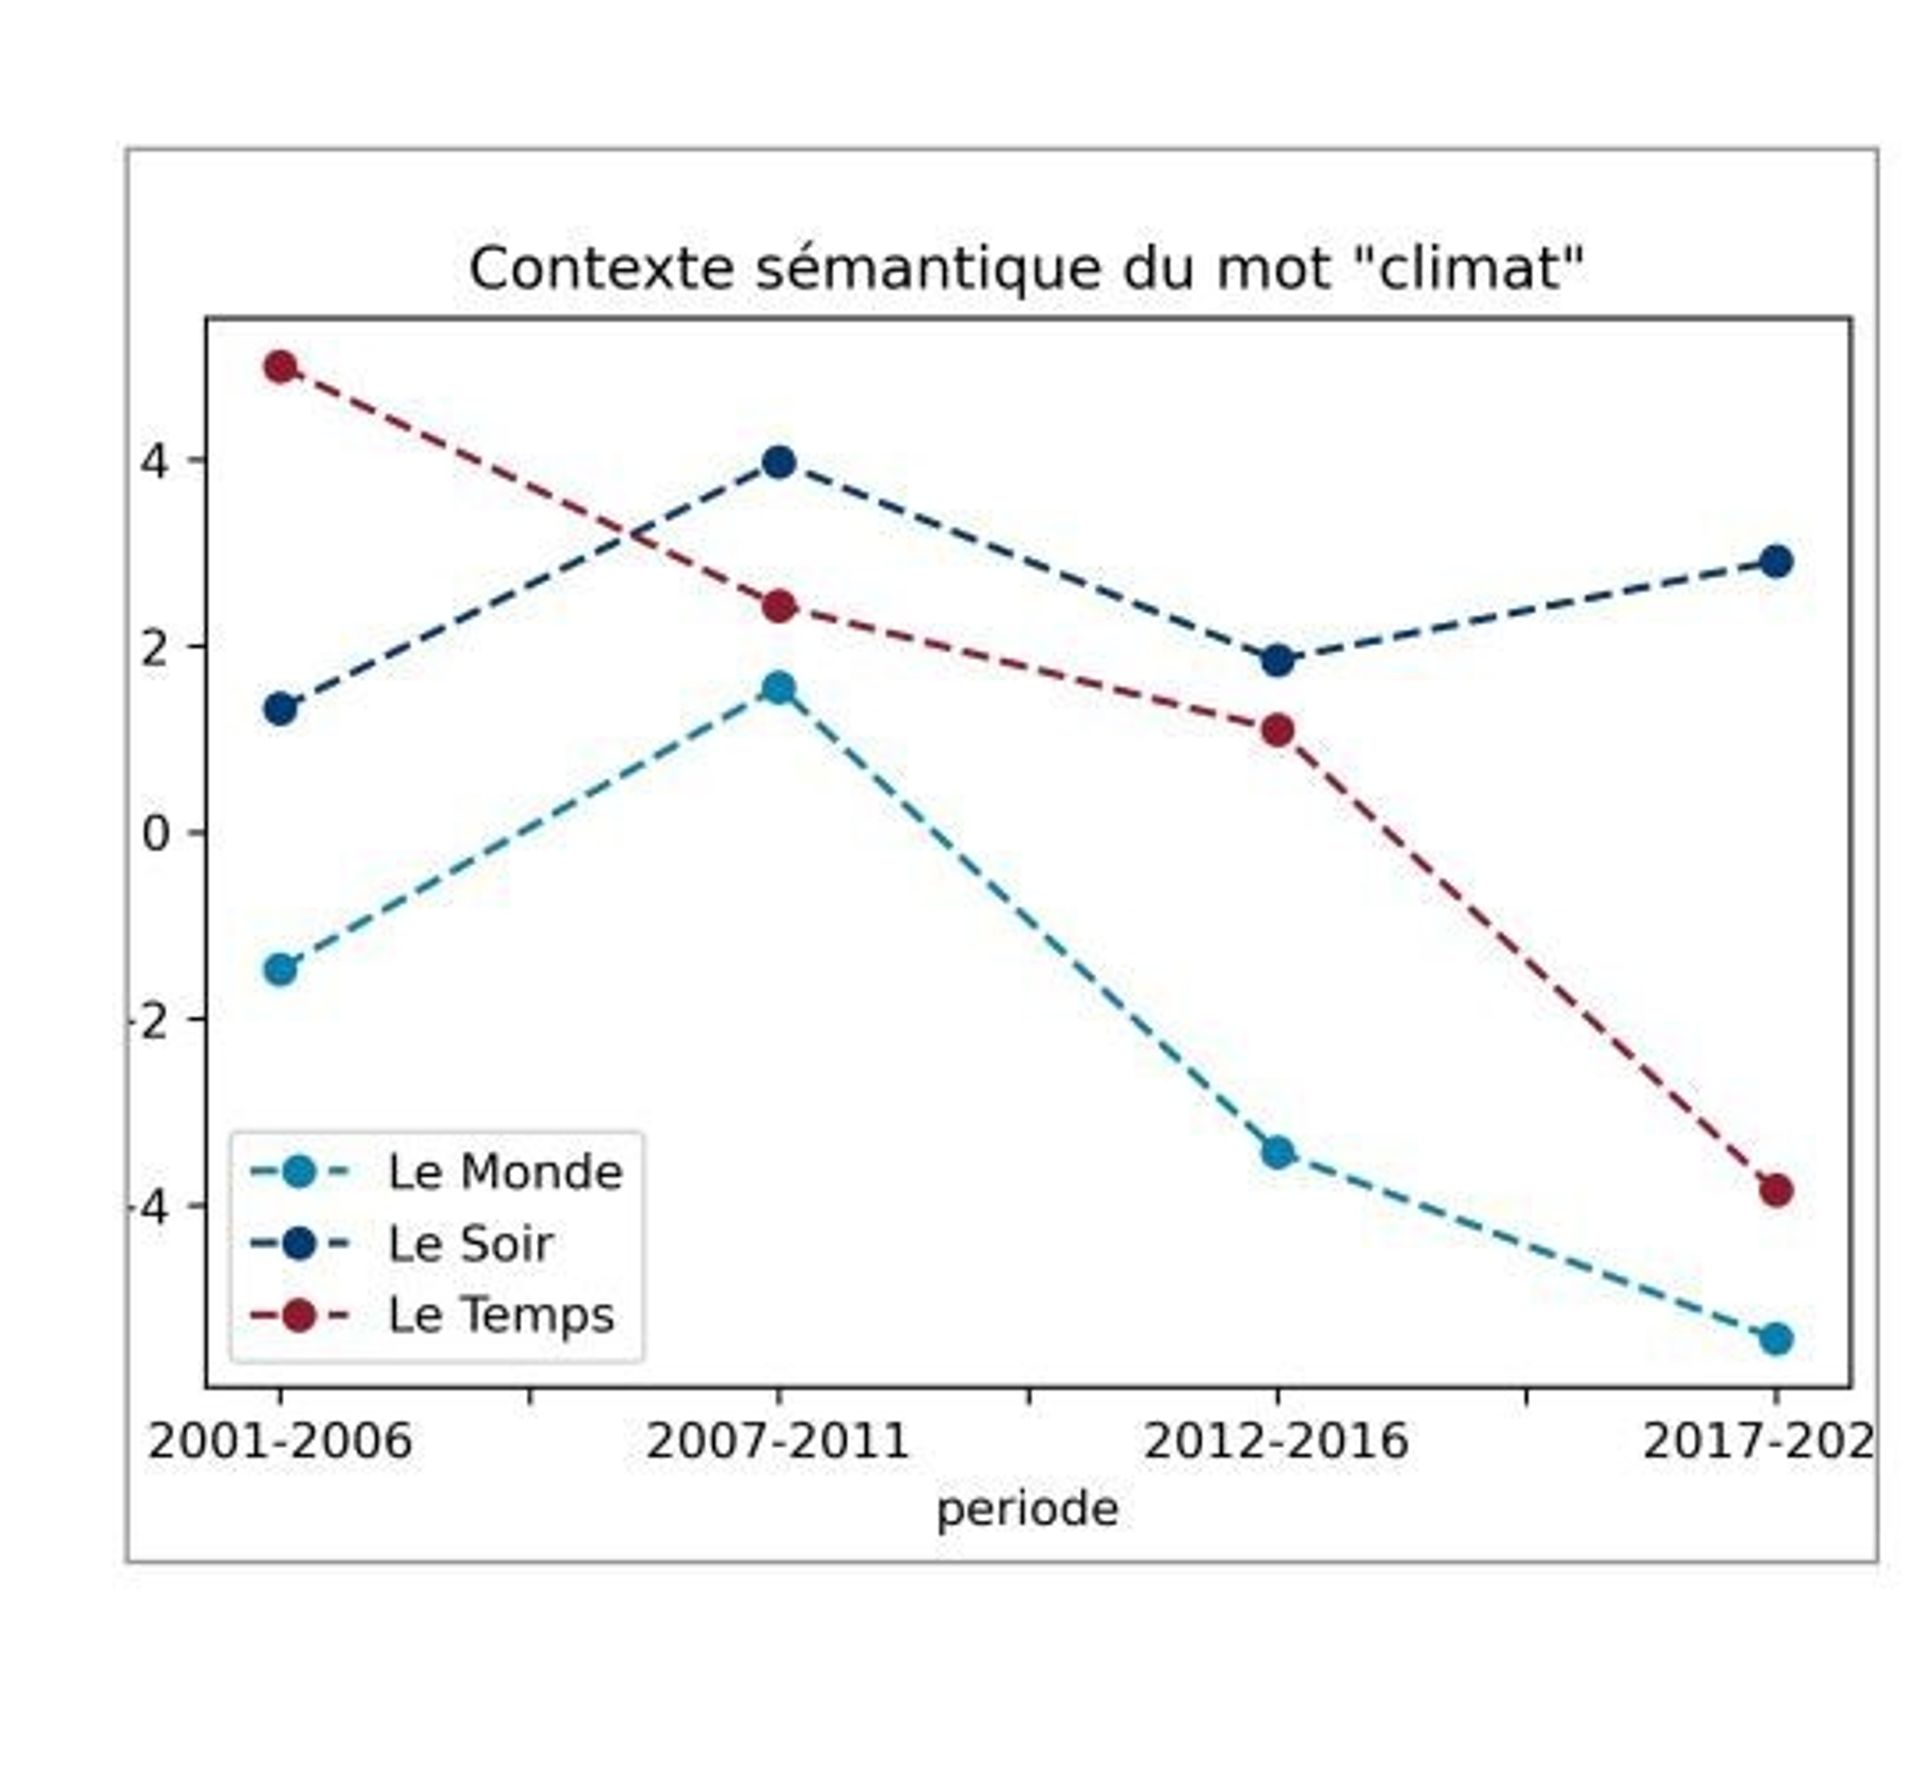 Contexte sémantique du mot "climat" dans les trois journaux entre 2001 et 2022. Au-dessus de 0 sur l’axe y, le mot apparaît dans des contextes sémantiques plus positifs ; en dessous, plus négatifs/anxiogènes.